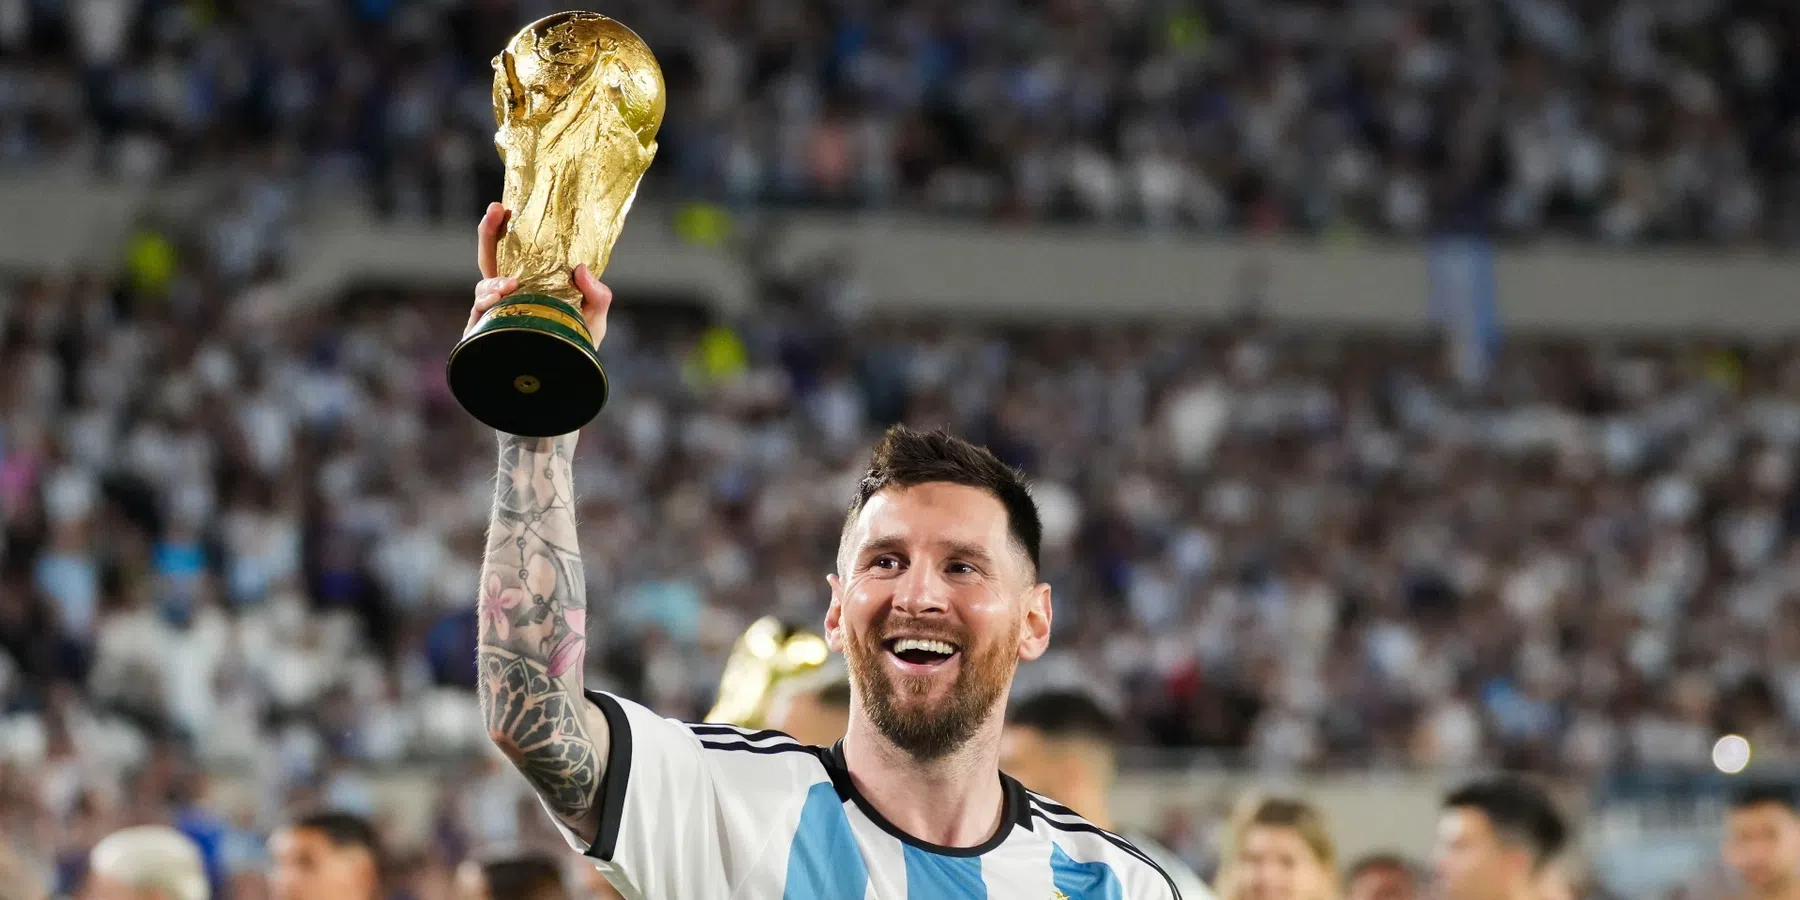 Messi vertelt over therapietraject tijdens loopbaan